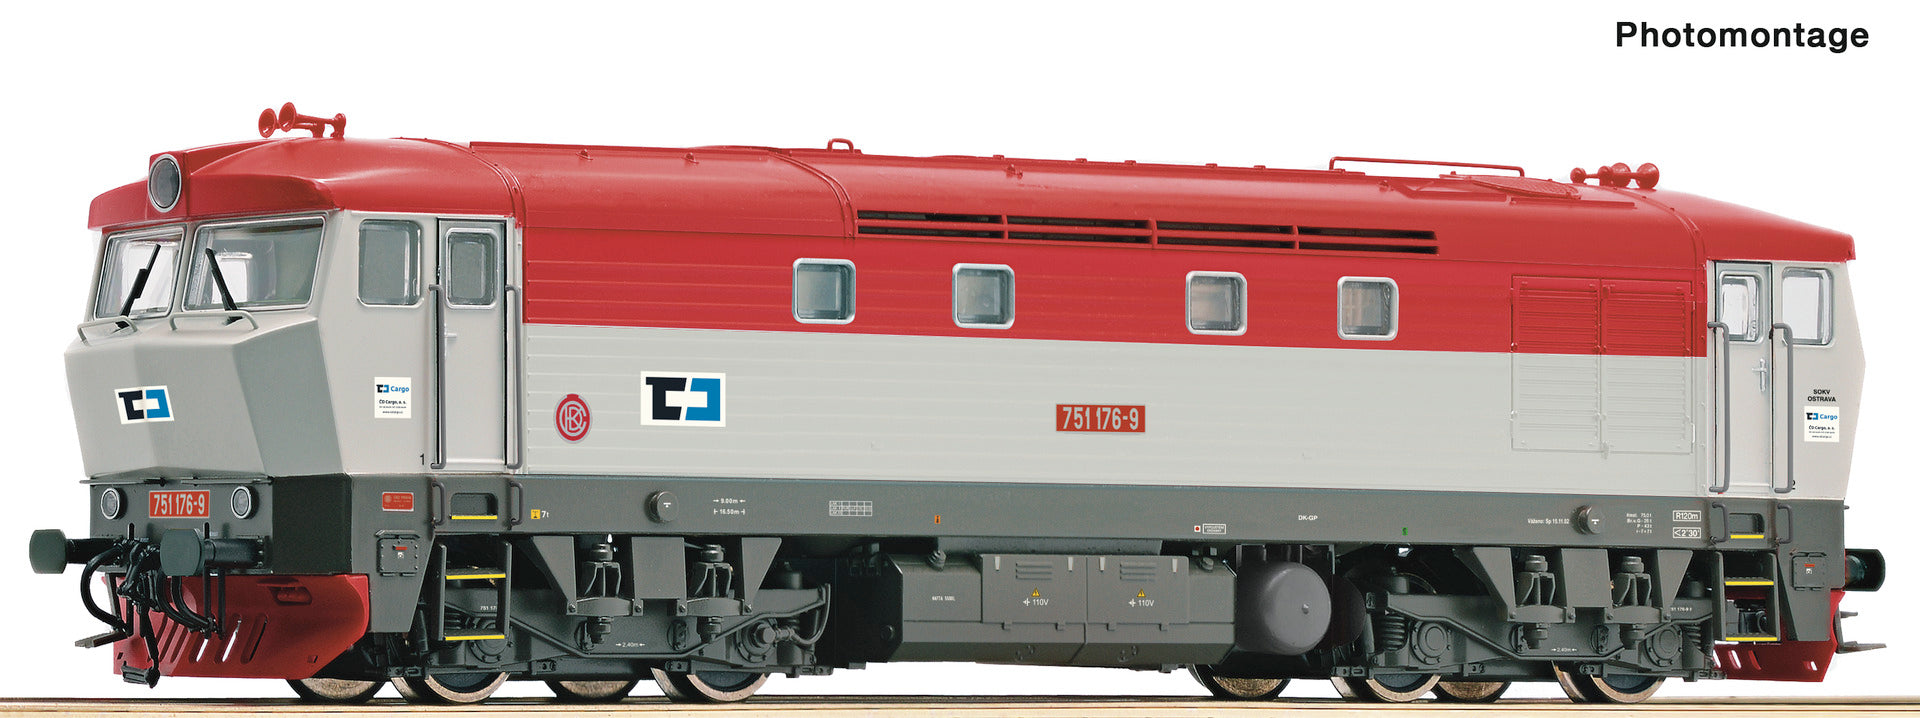 Roco HO 70927 Diesel locomotive 751 176-9 CD Cargo era VI DCC 2023 New